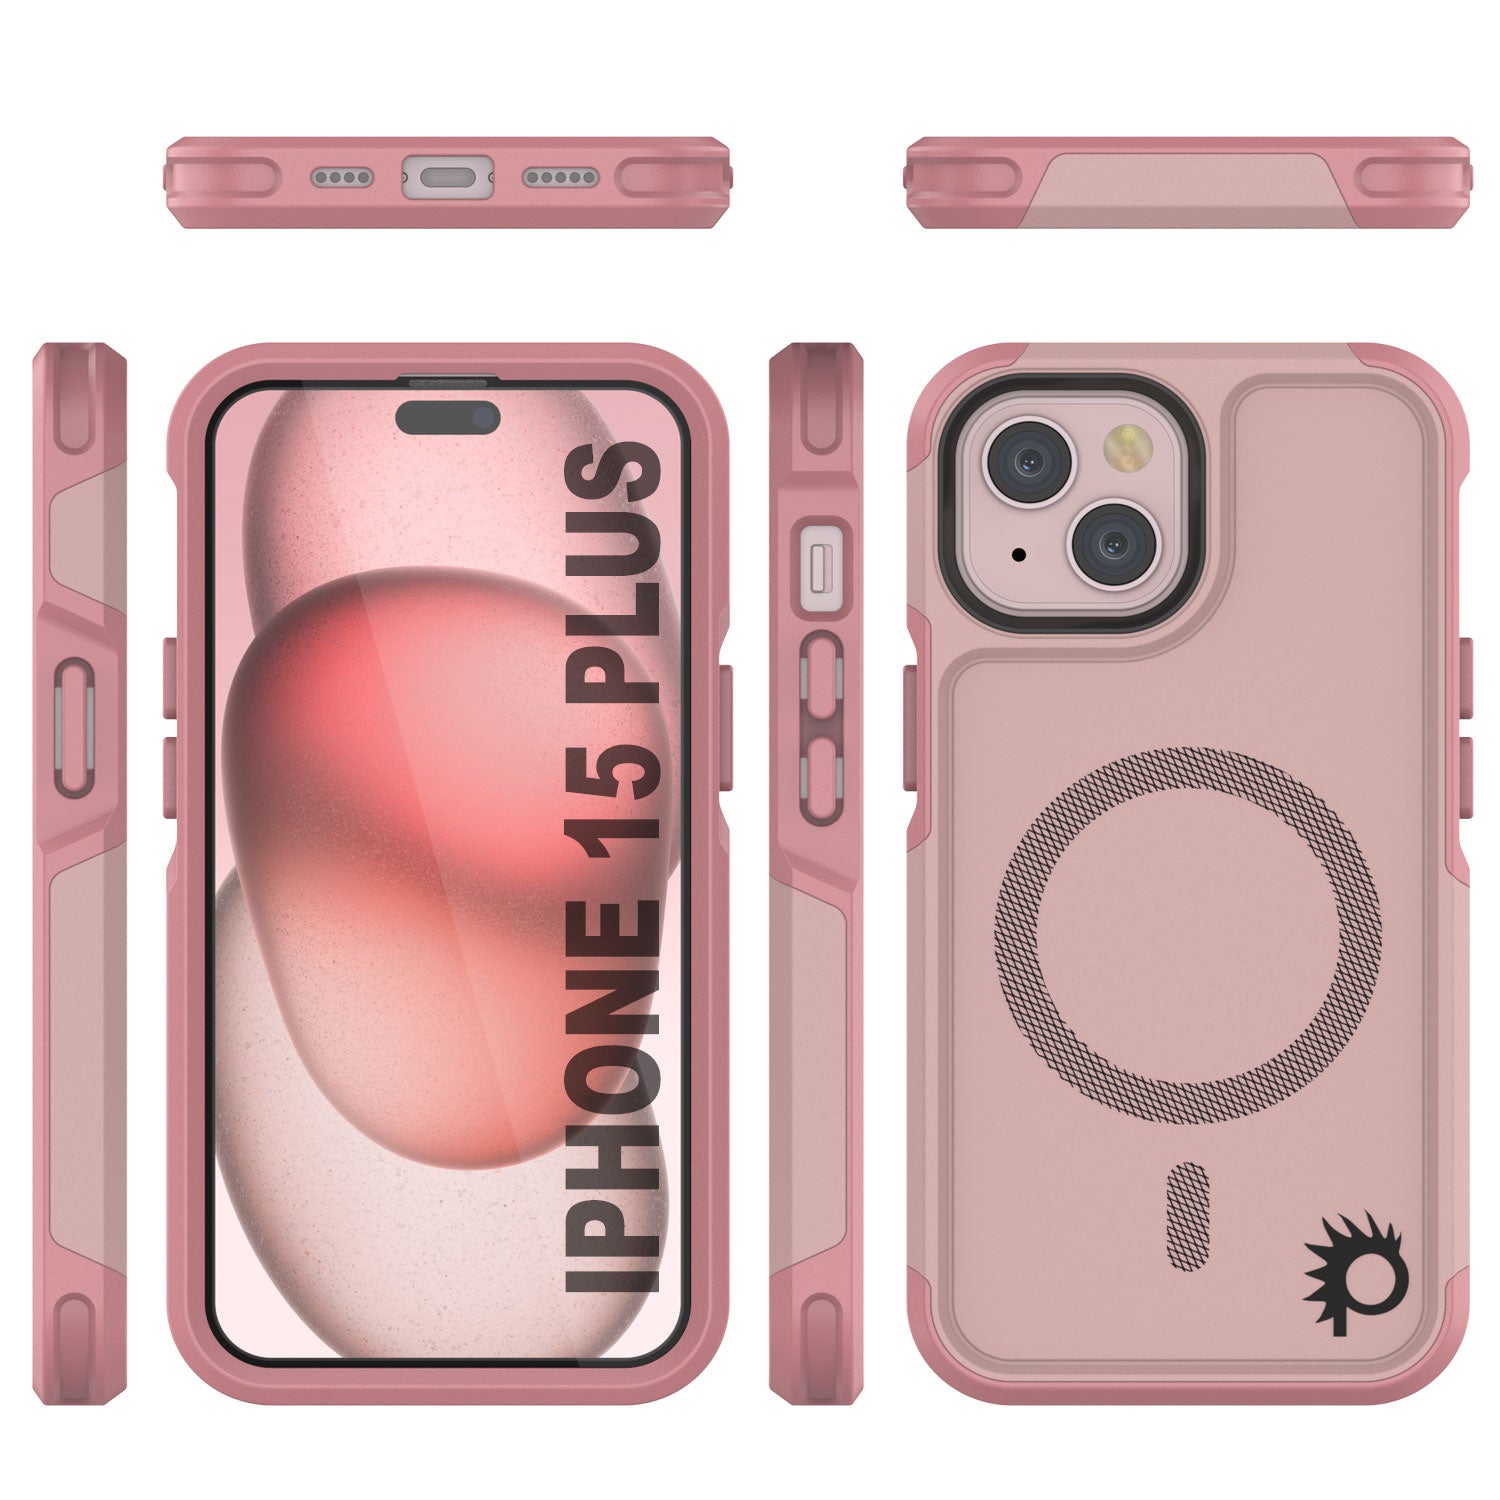 iPhone 15 Plus Case